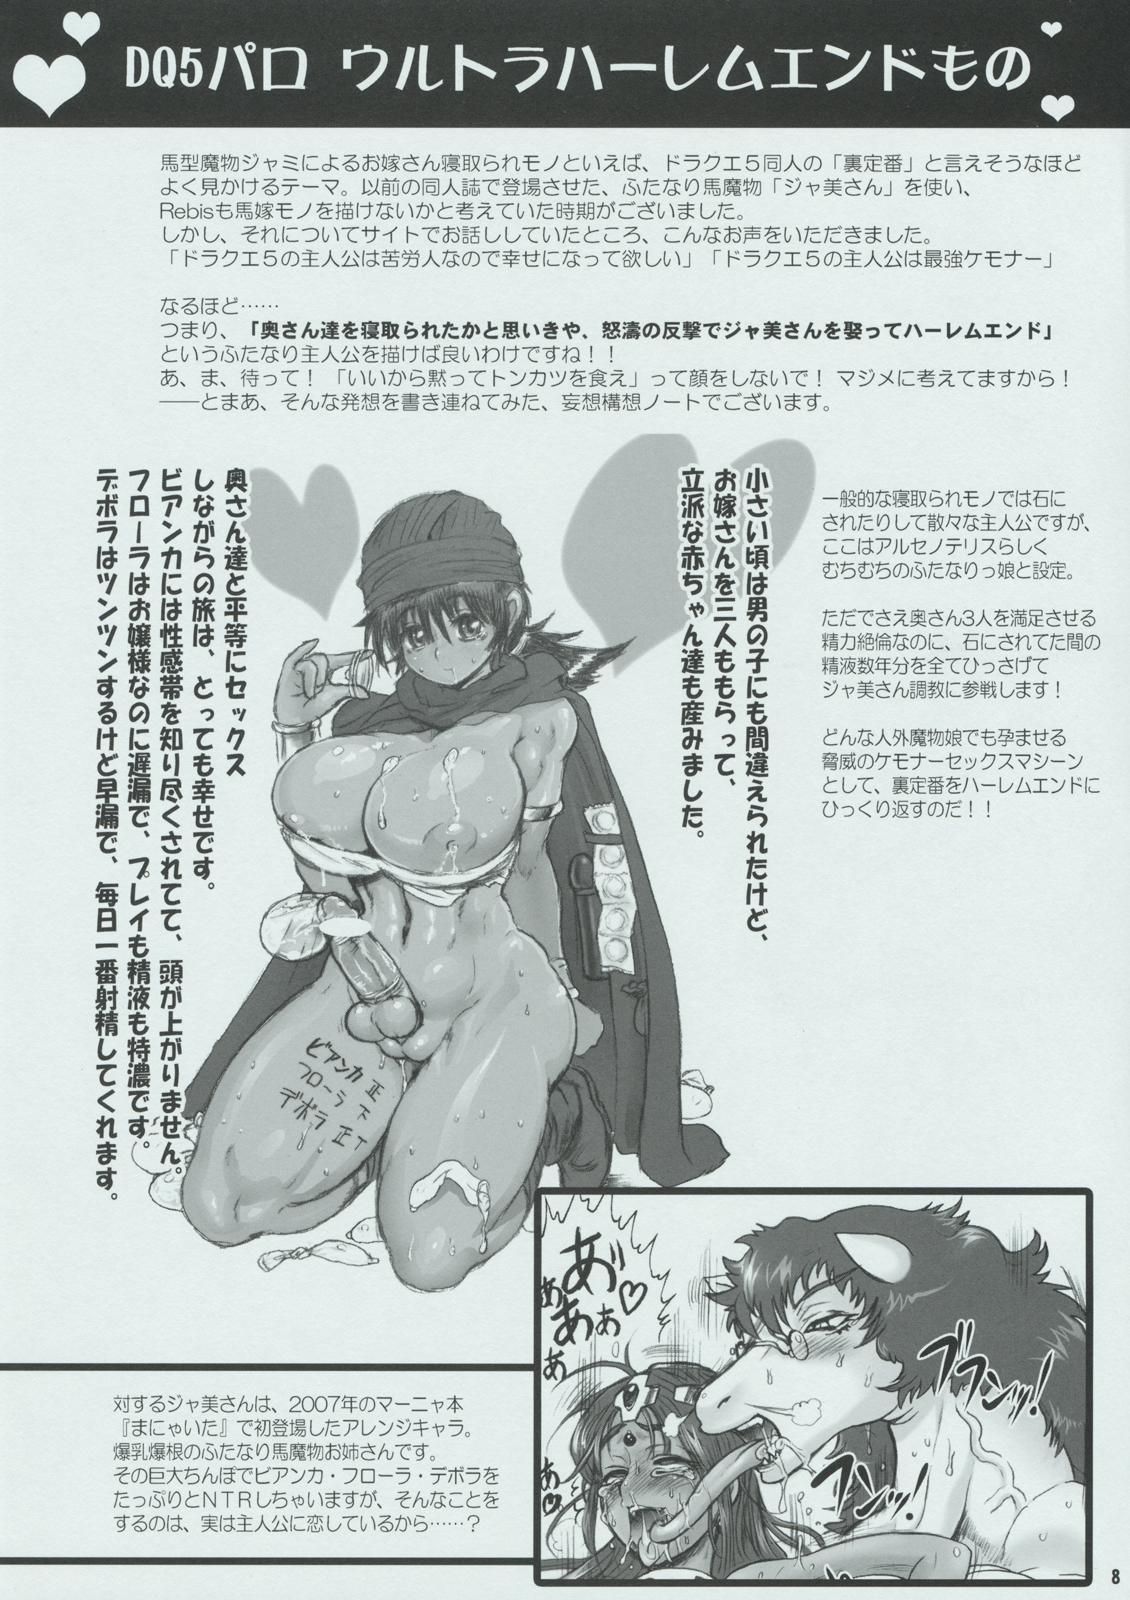 Xxx (Futaket 05) [Arsenothelus (Rebis)] Arsenothelus Kousou (Mousou) Note (Dragon Quest, Street Fighter) - Street fighter Groping - Page 8